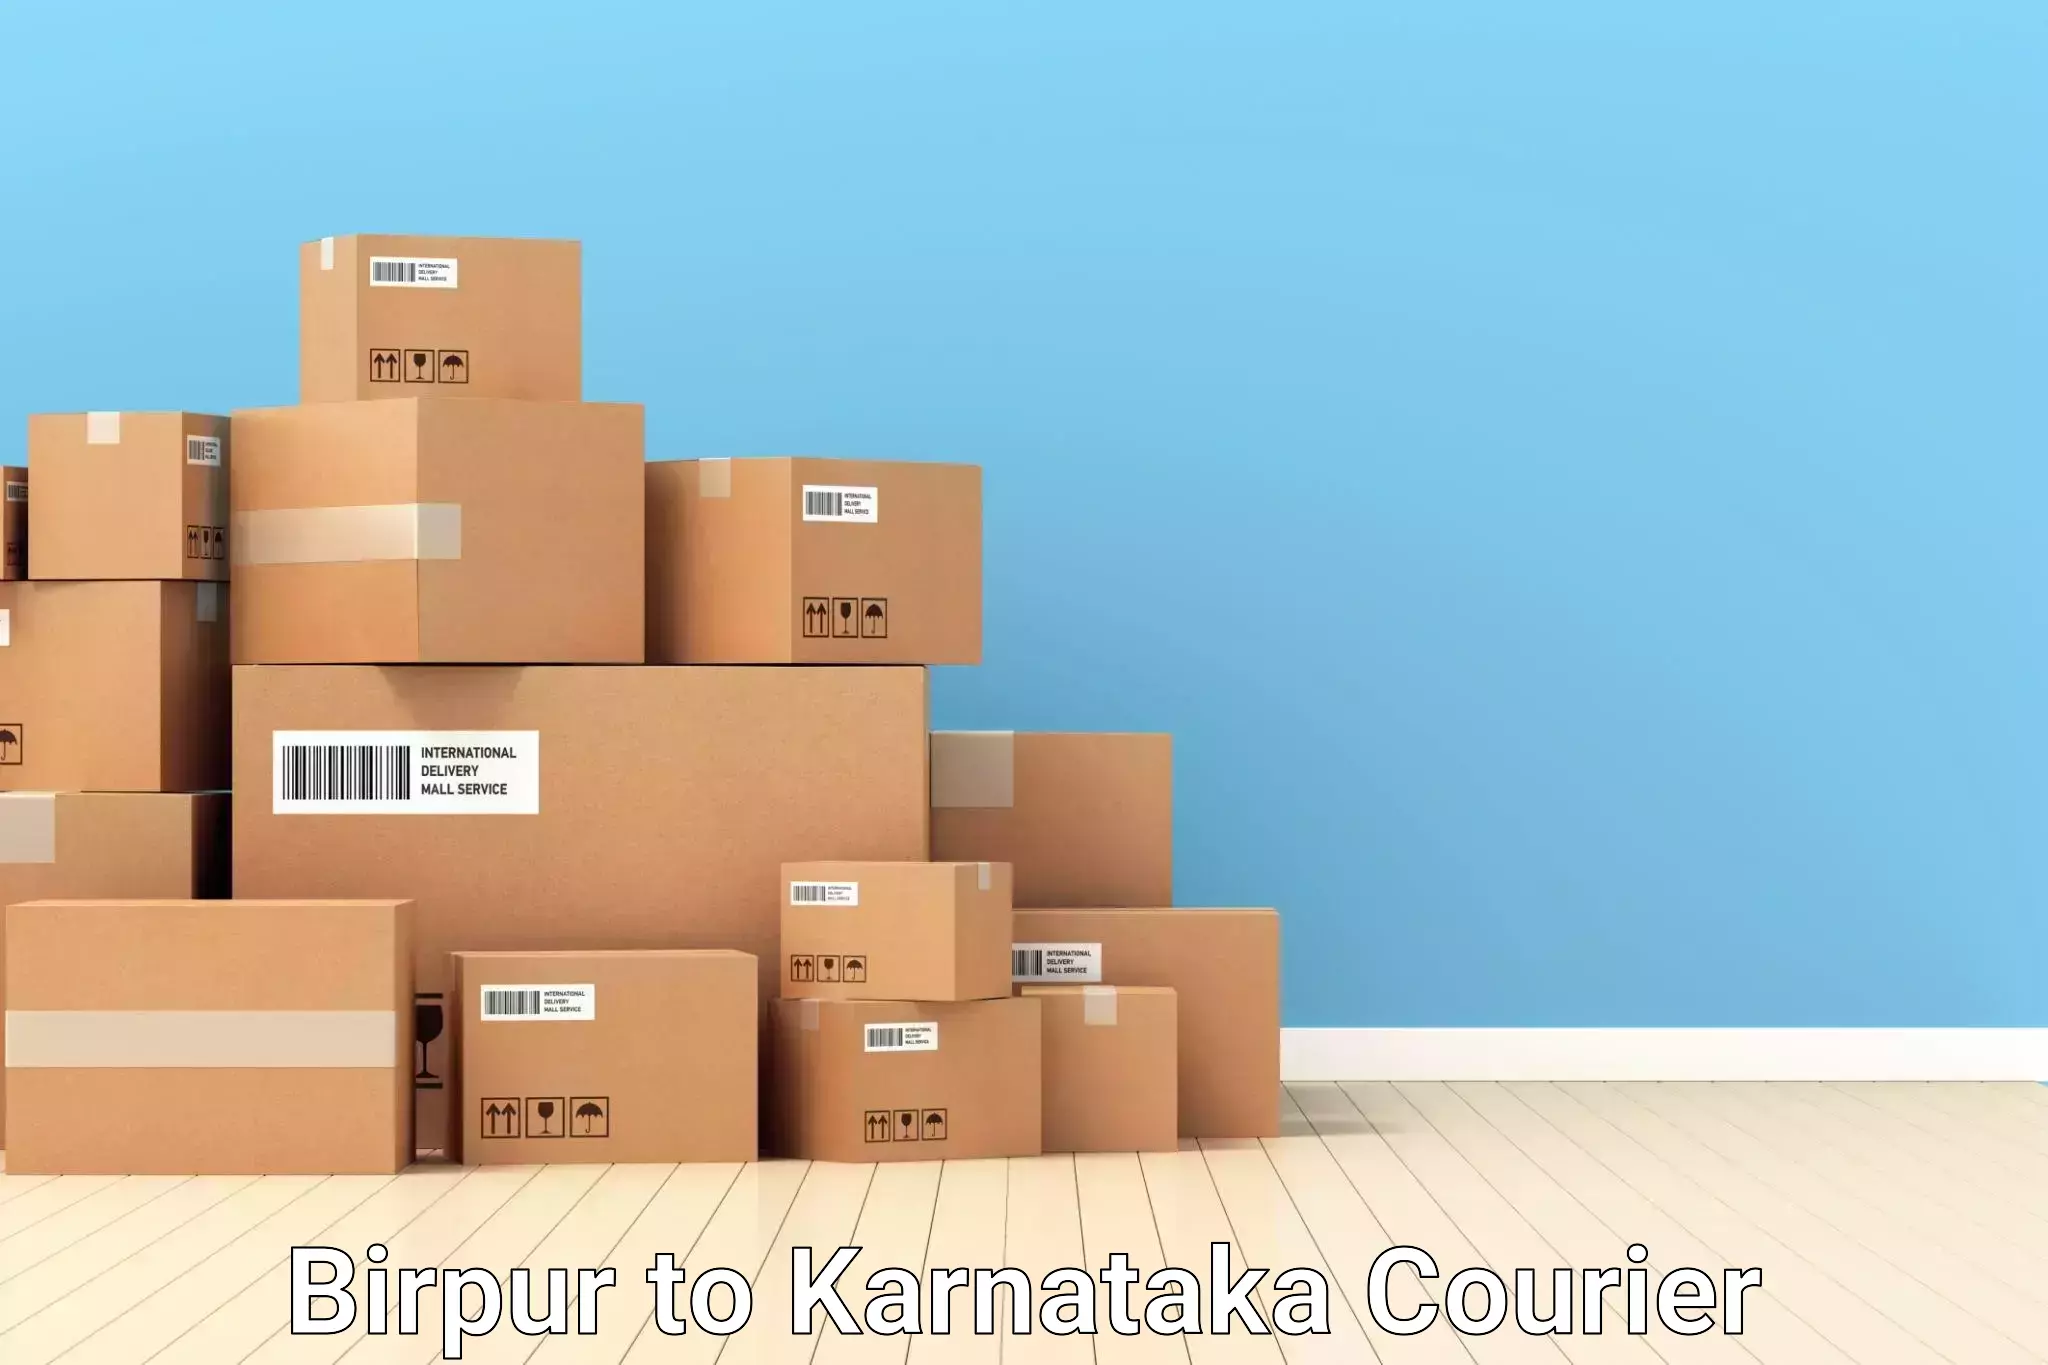 Hassle-free luggage shipping Birpur to Kanjarakatte